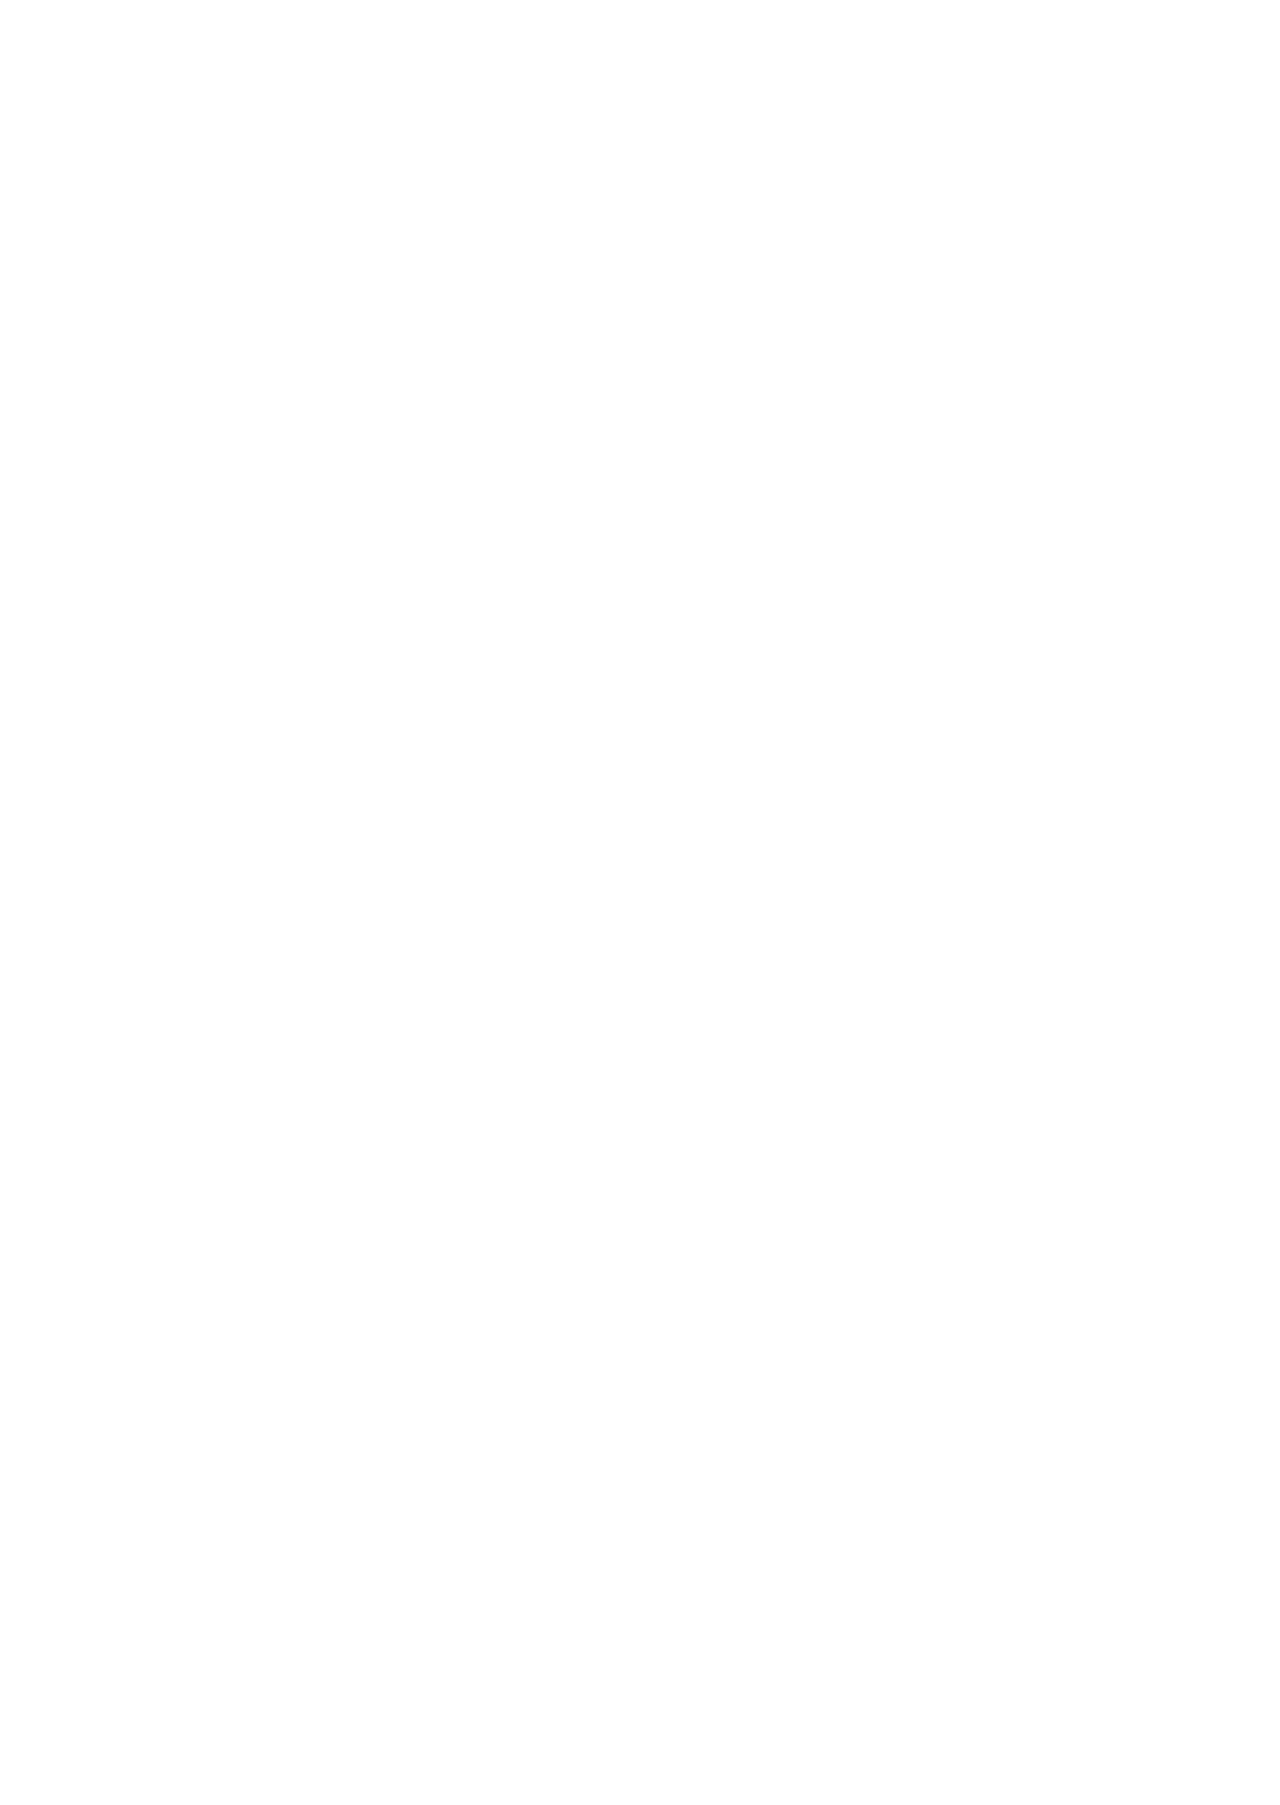 Chris.com's logo